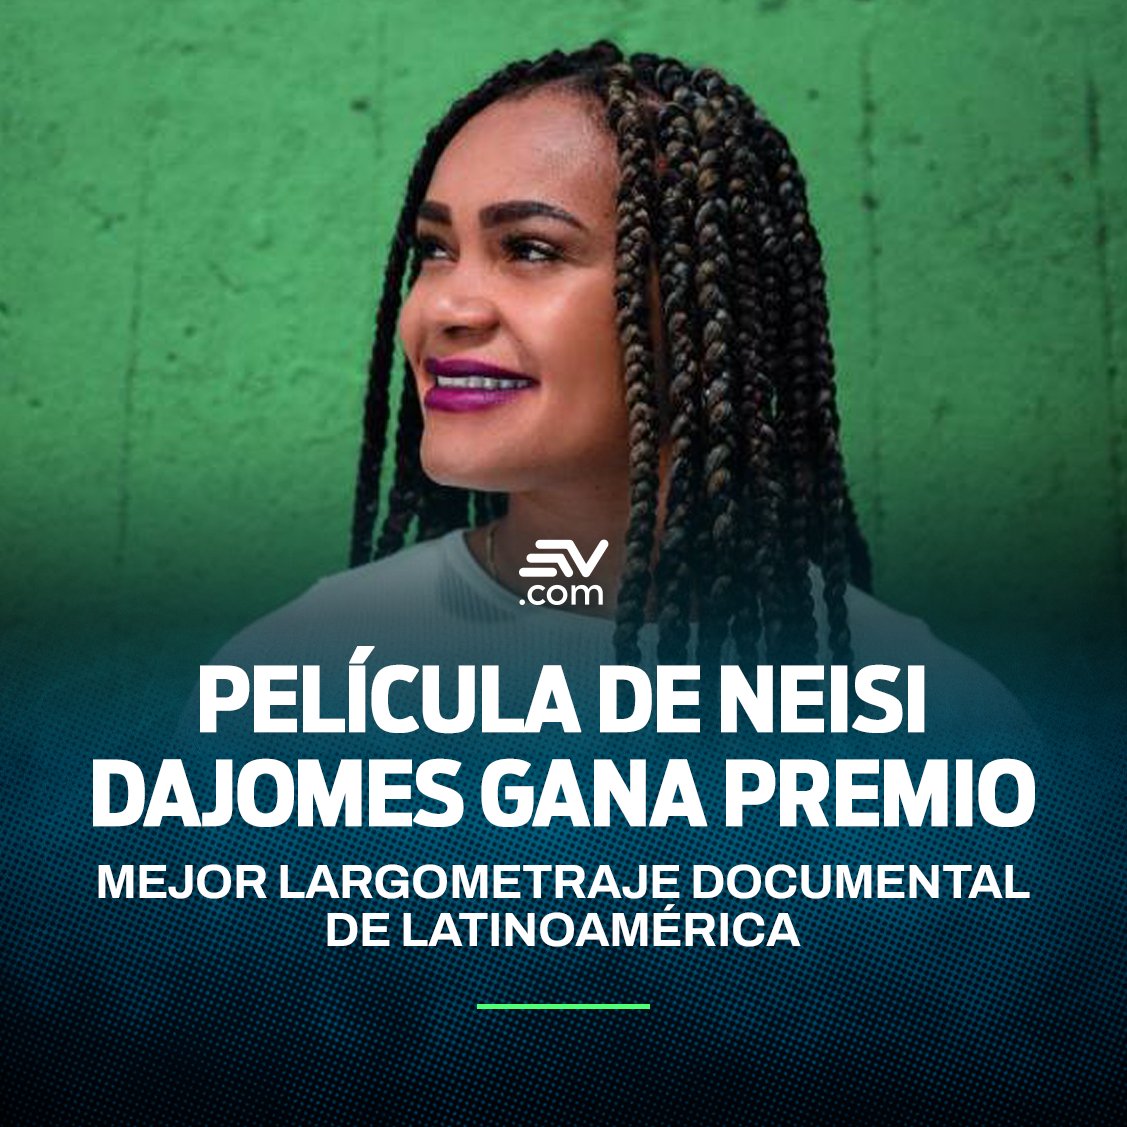 #LoMásLeído | La Fuerza de un Sueño 🏅, película que narra el proceso deportivo y familiar de Neisi Dajomes, gana un premio como mejor Largometraje Documental ➡ bit.ly/4dL07K3